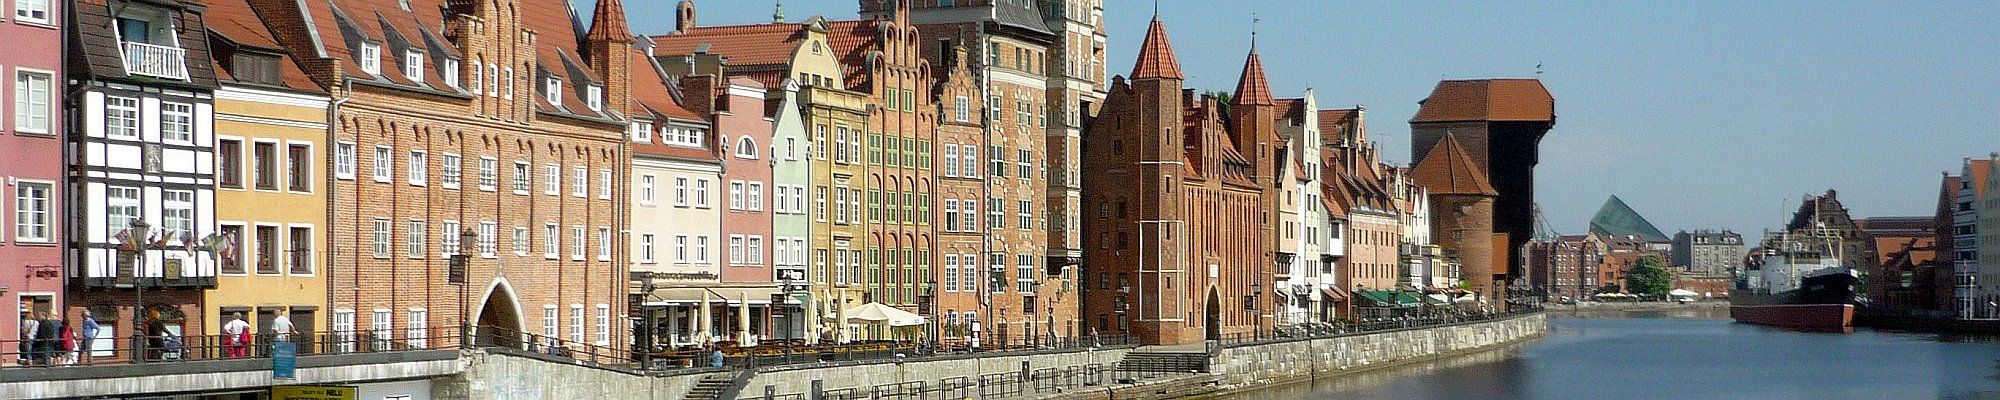 Danzig - Mottlaupromenade mit Krantor - Partner-Reisen - Reisen nach Ostpreußen, in das Baltikum, nach Russland und Polen